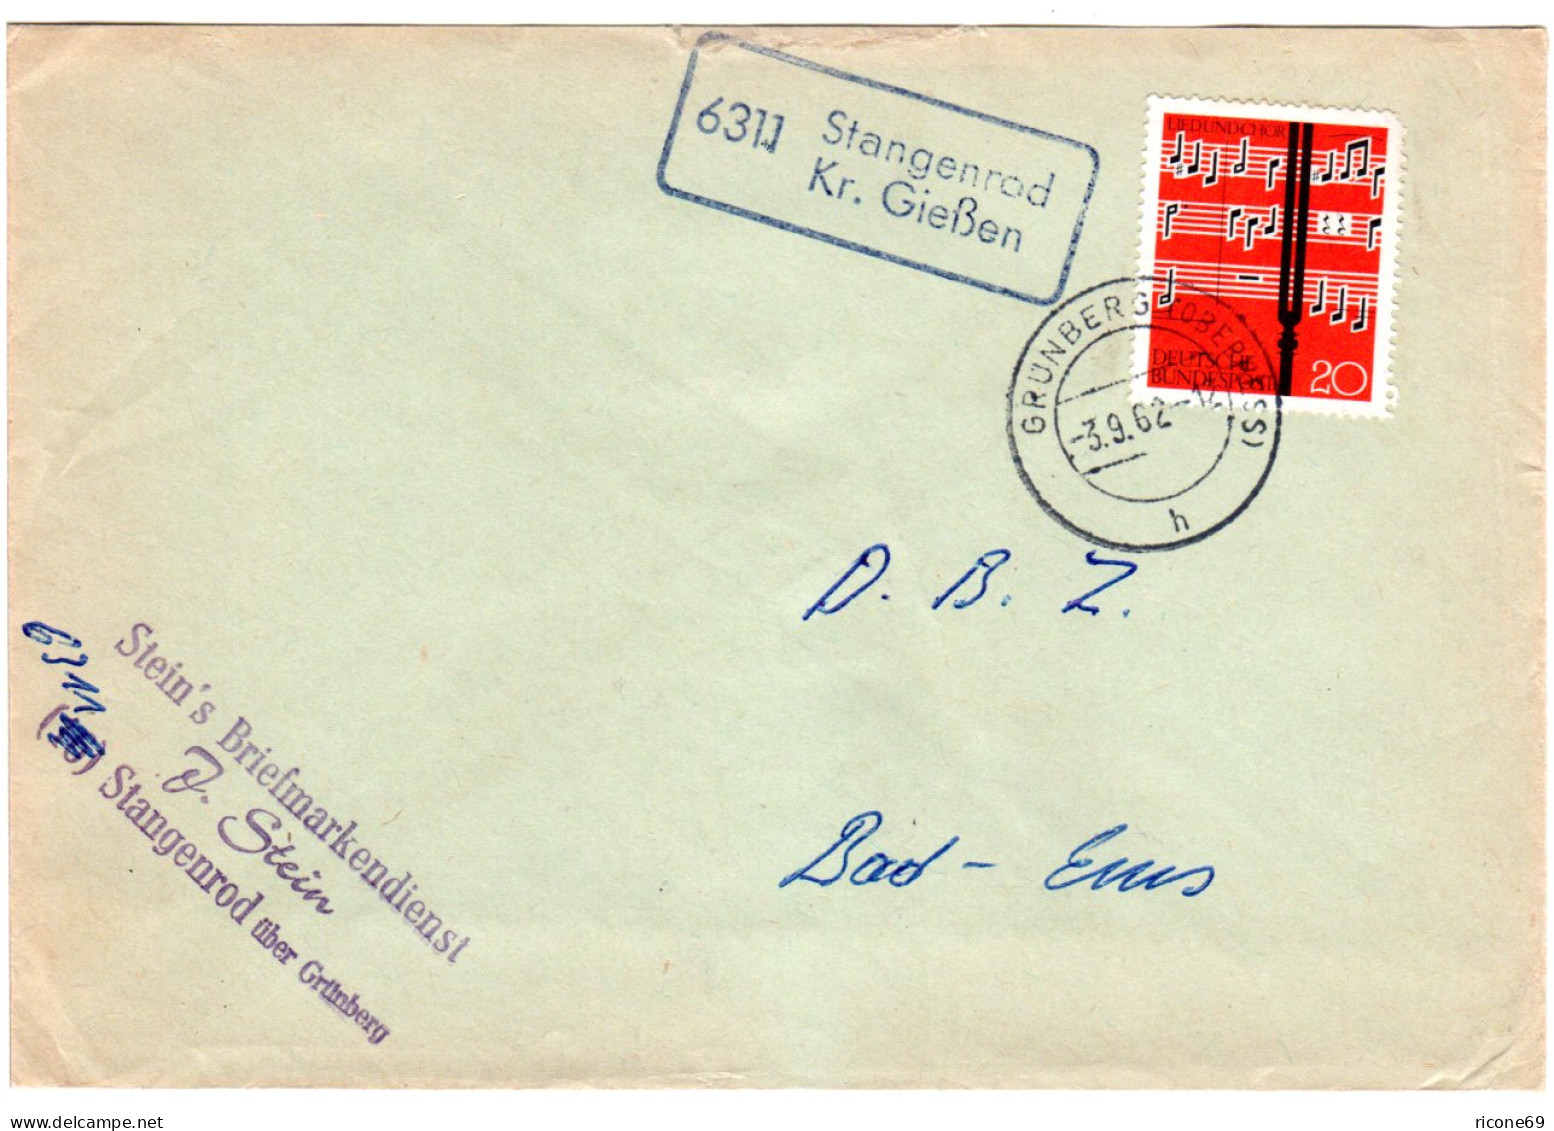 BRD 1962, Landpost Stpl. 6311 STANGENROD Kr. Gießen Auf Brief M. 20 Pf.  - Sammlungen